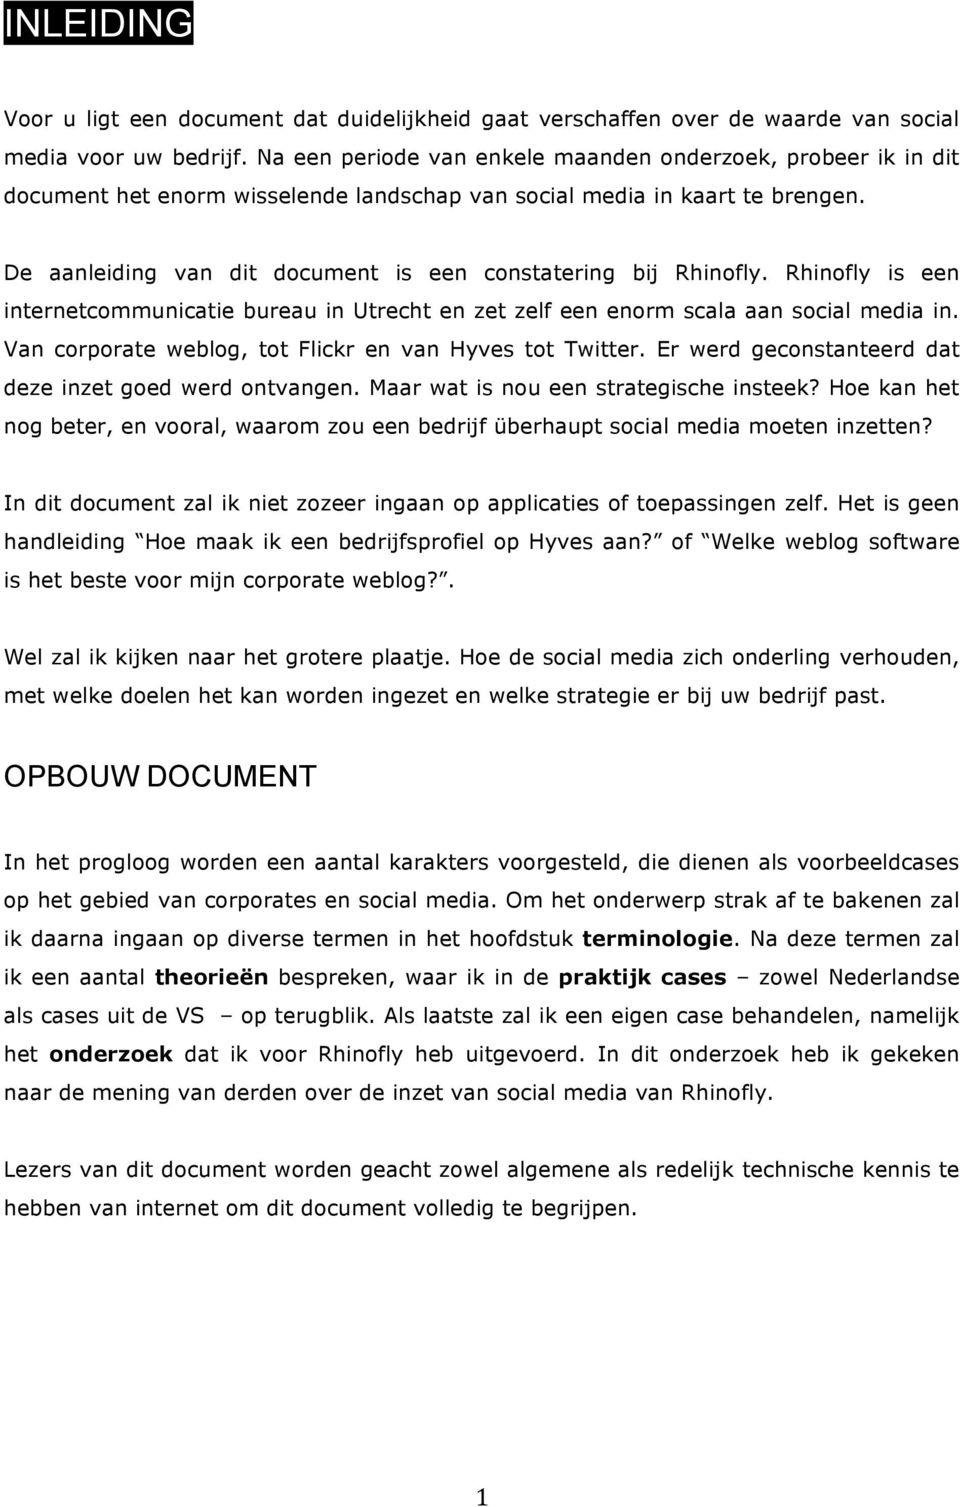 De aanleiding van dit document is een constatering bij Rhinofly. Rhinofly is een internetcommunicatie bureau in Utrecht en zet zelf een enorm scala aan social media in.